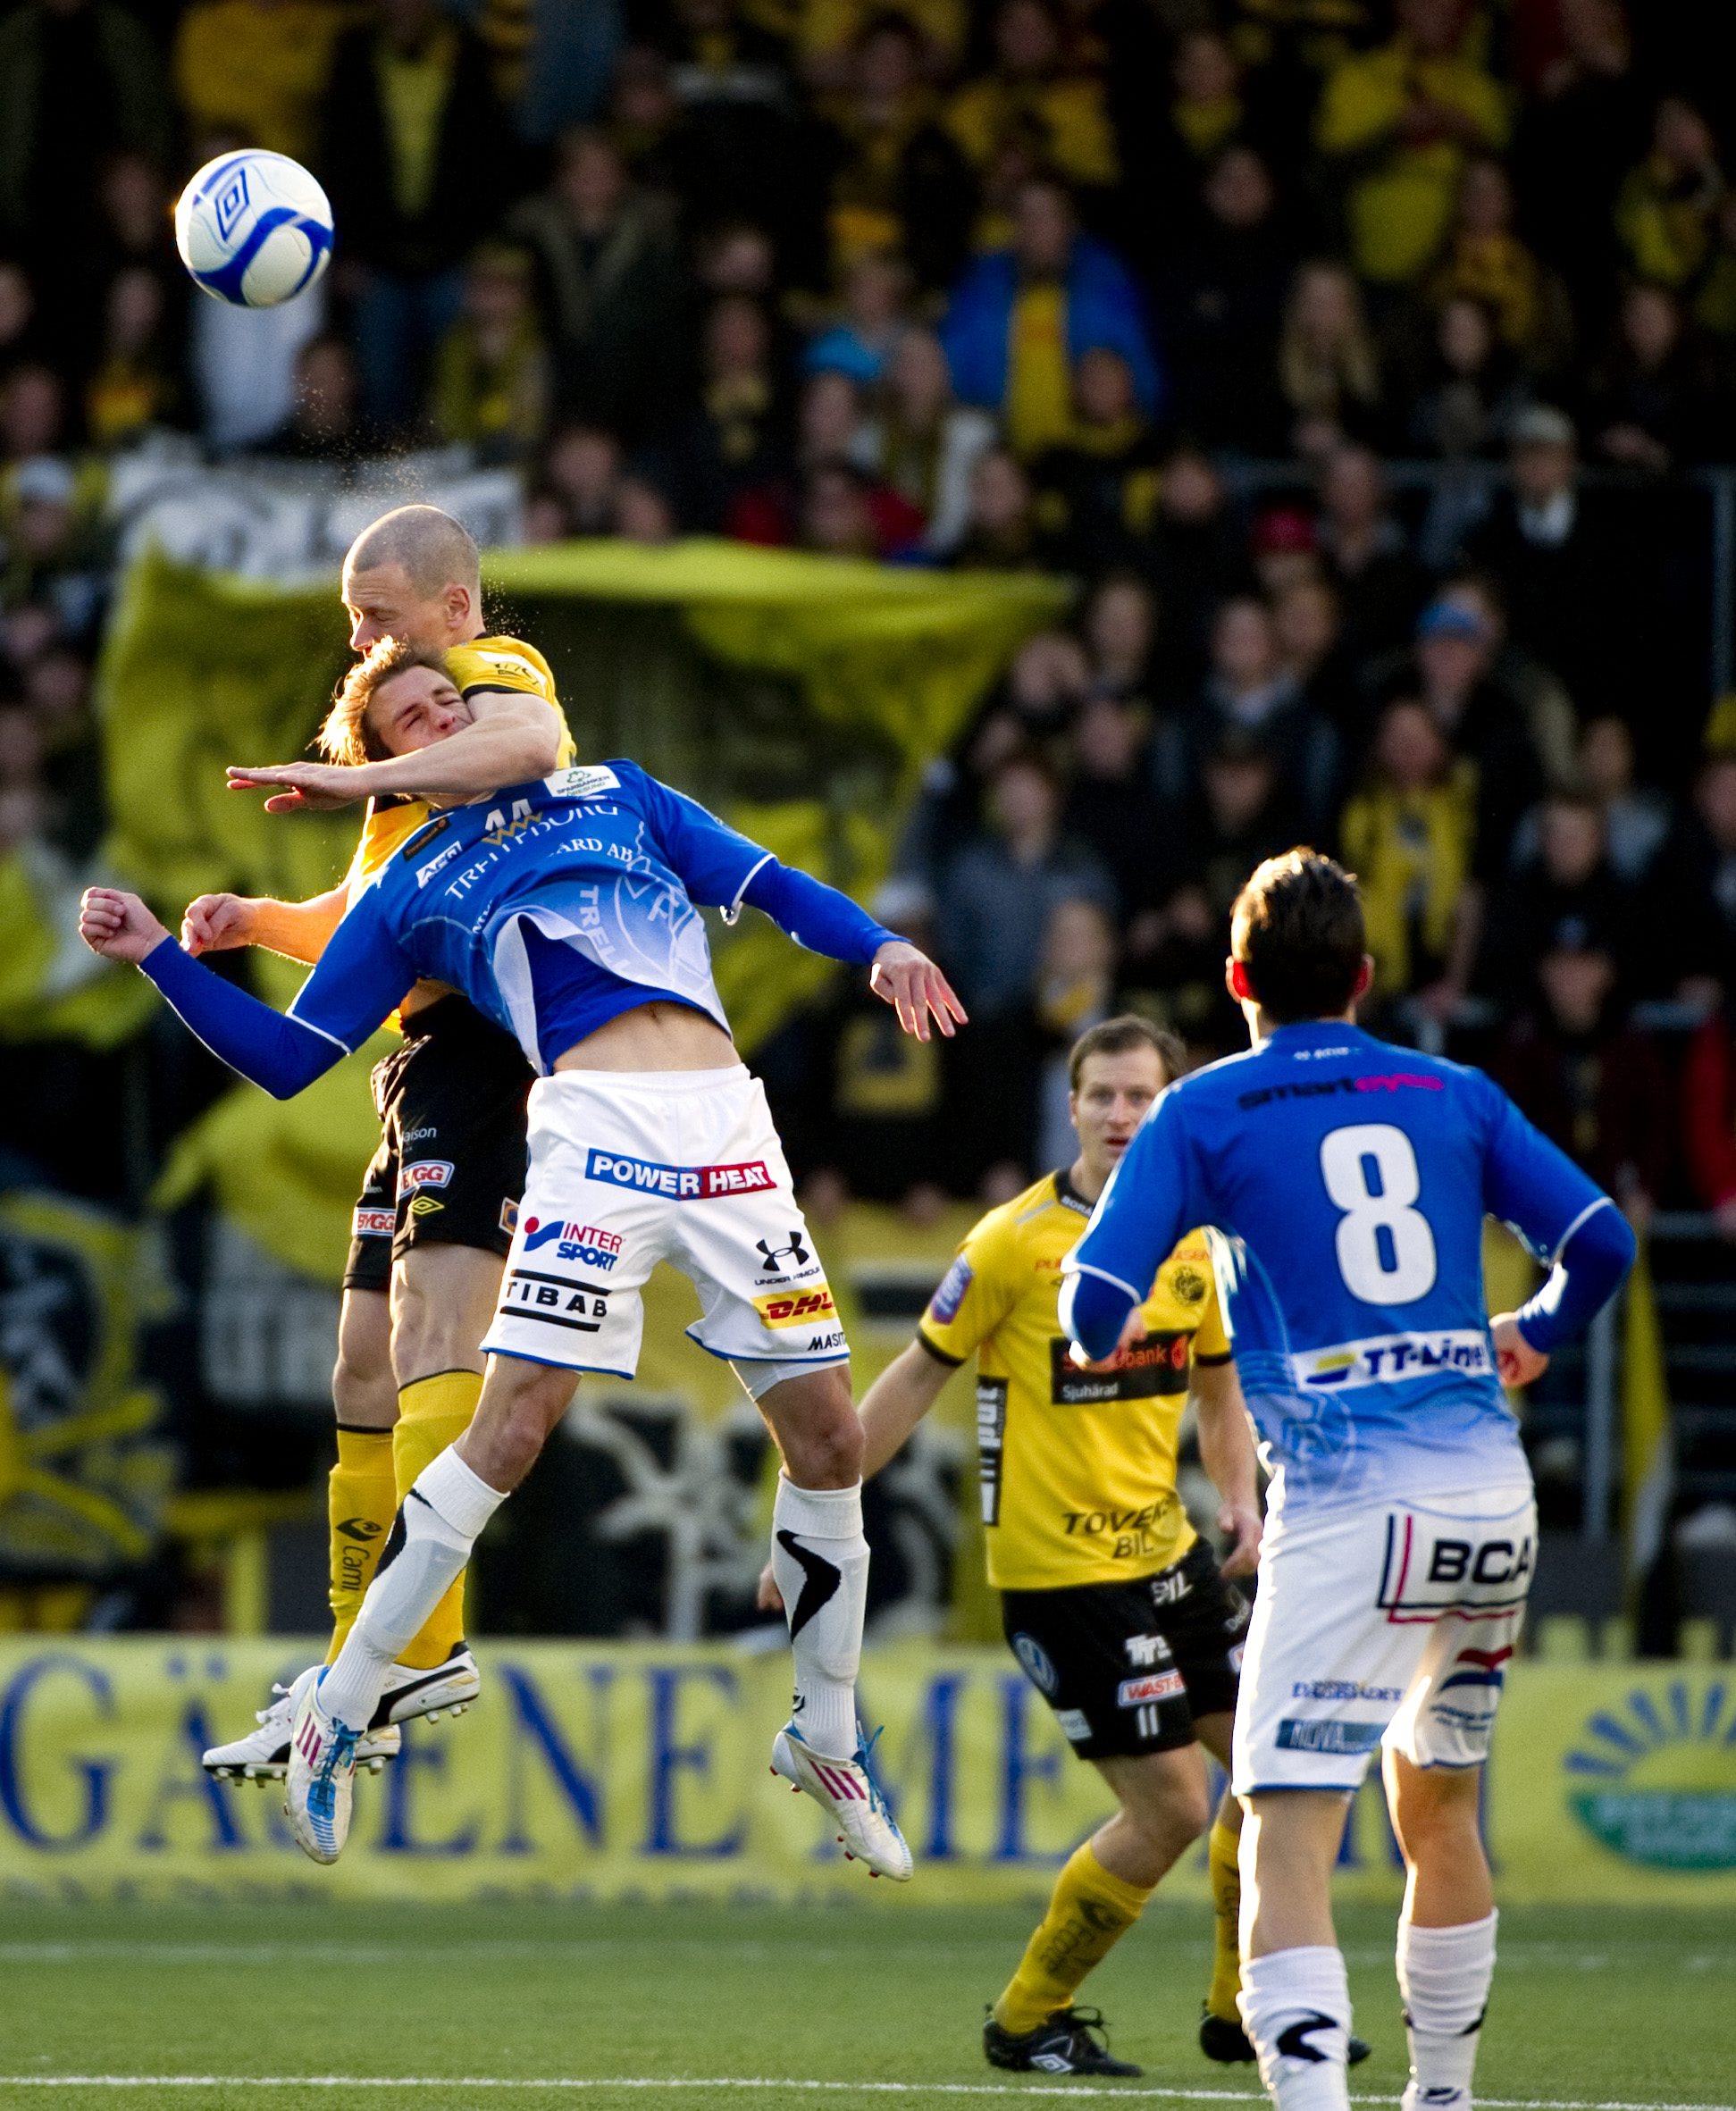 Mittbackarna Andreas Augustsson (bilden), Martin Andersson och Daniel Mobaeck är alla skadade inför matchen i kväll. Det ger Sebastian Holmén chansen. 